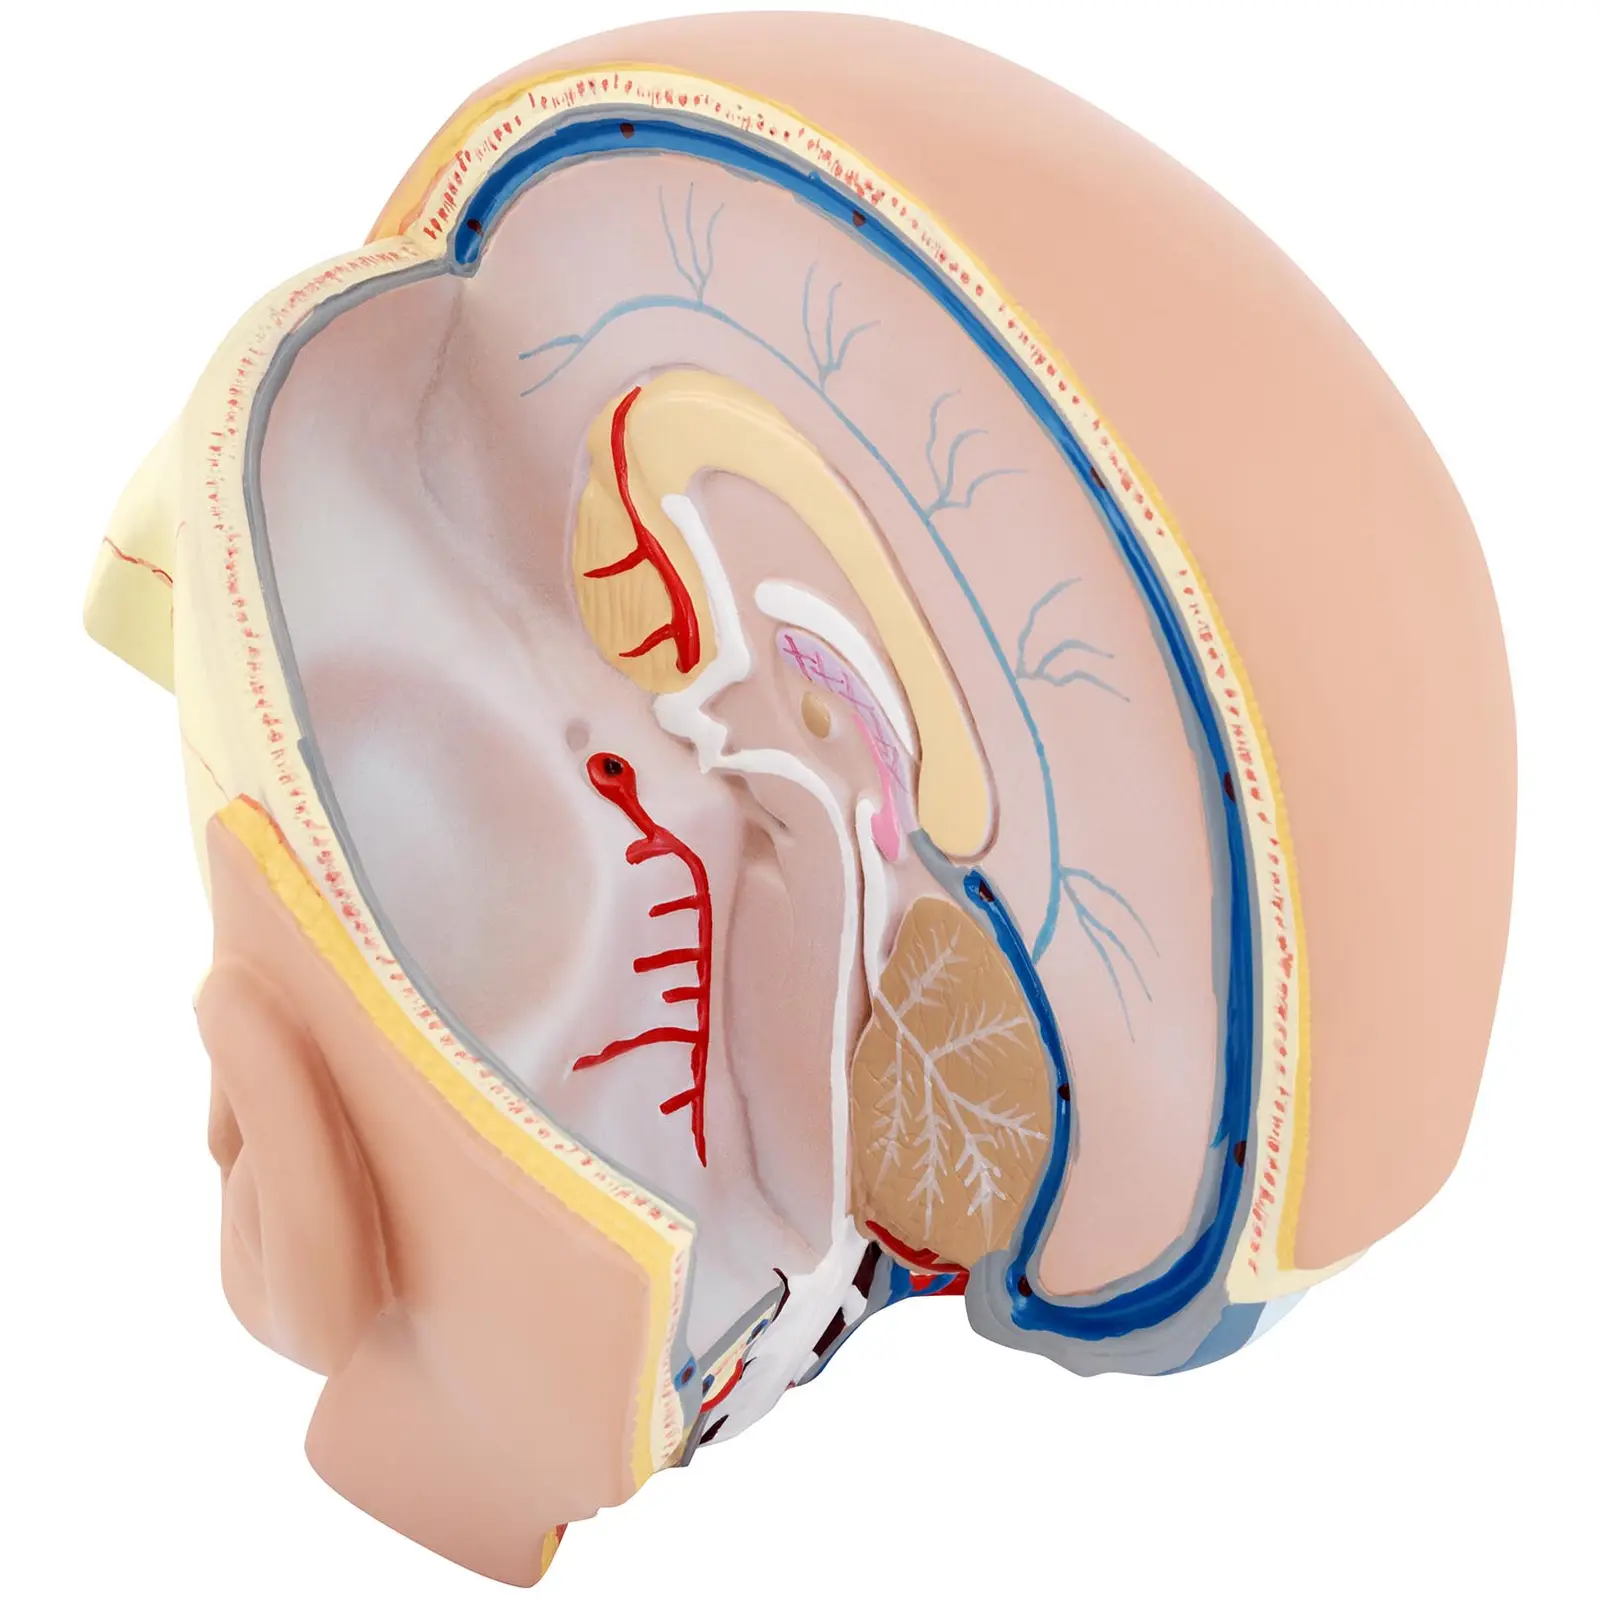 Modello del cervello umano con testa - Smontabile in 4 parti - Grandezza naturale